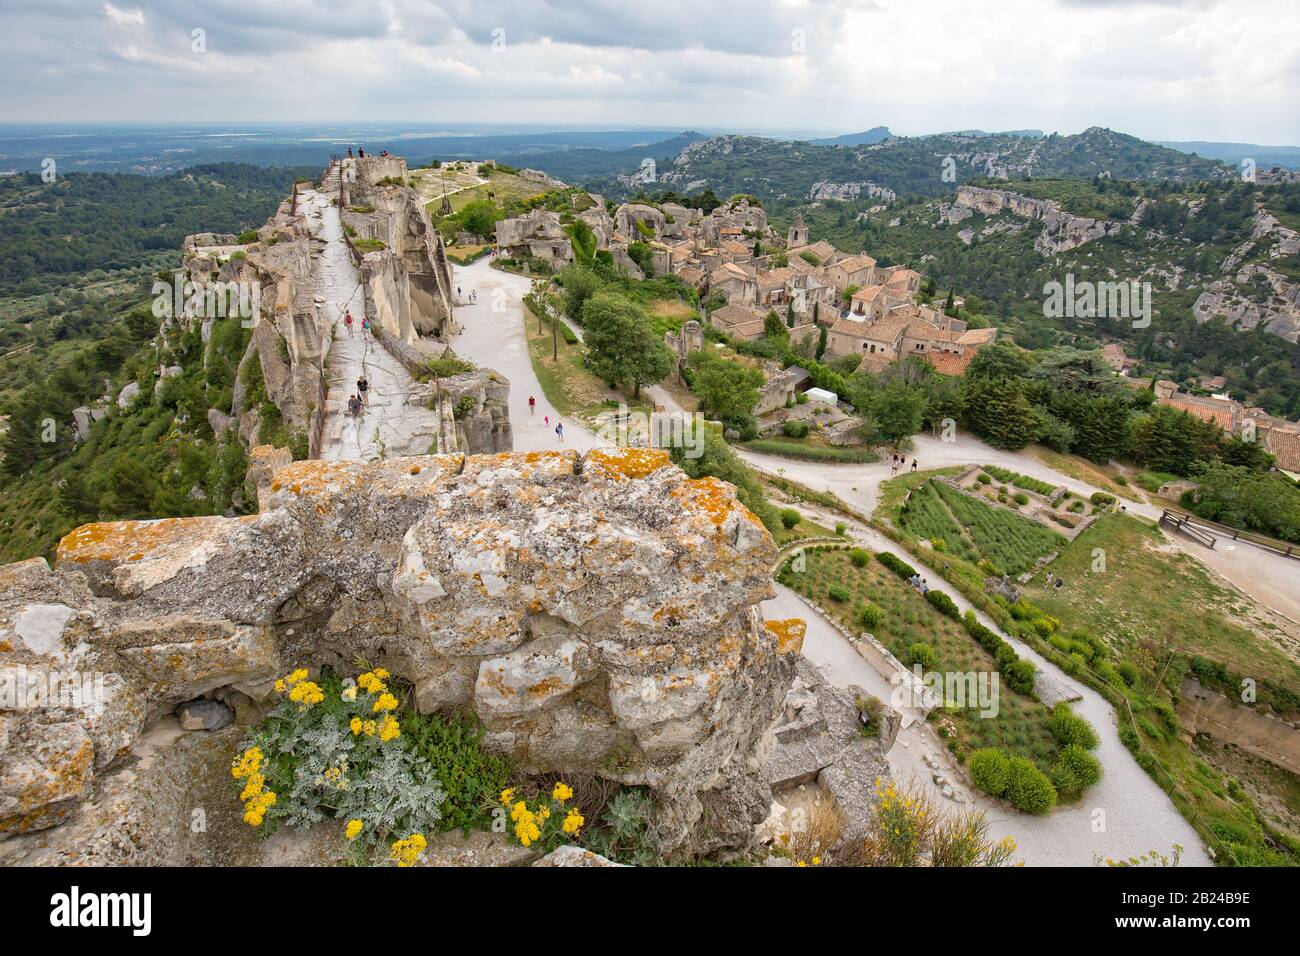 Les Baux-de-Provence, Provenza, Francia - Jun 05 2017: El castillo ofrece una magnífica vista sobre el valle de Baux, viñedos y campos de olivos Foto de stock